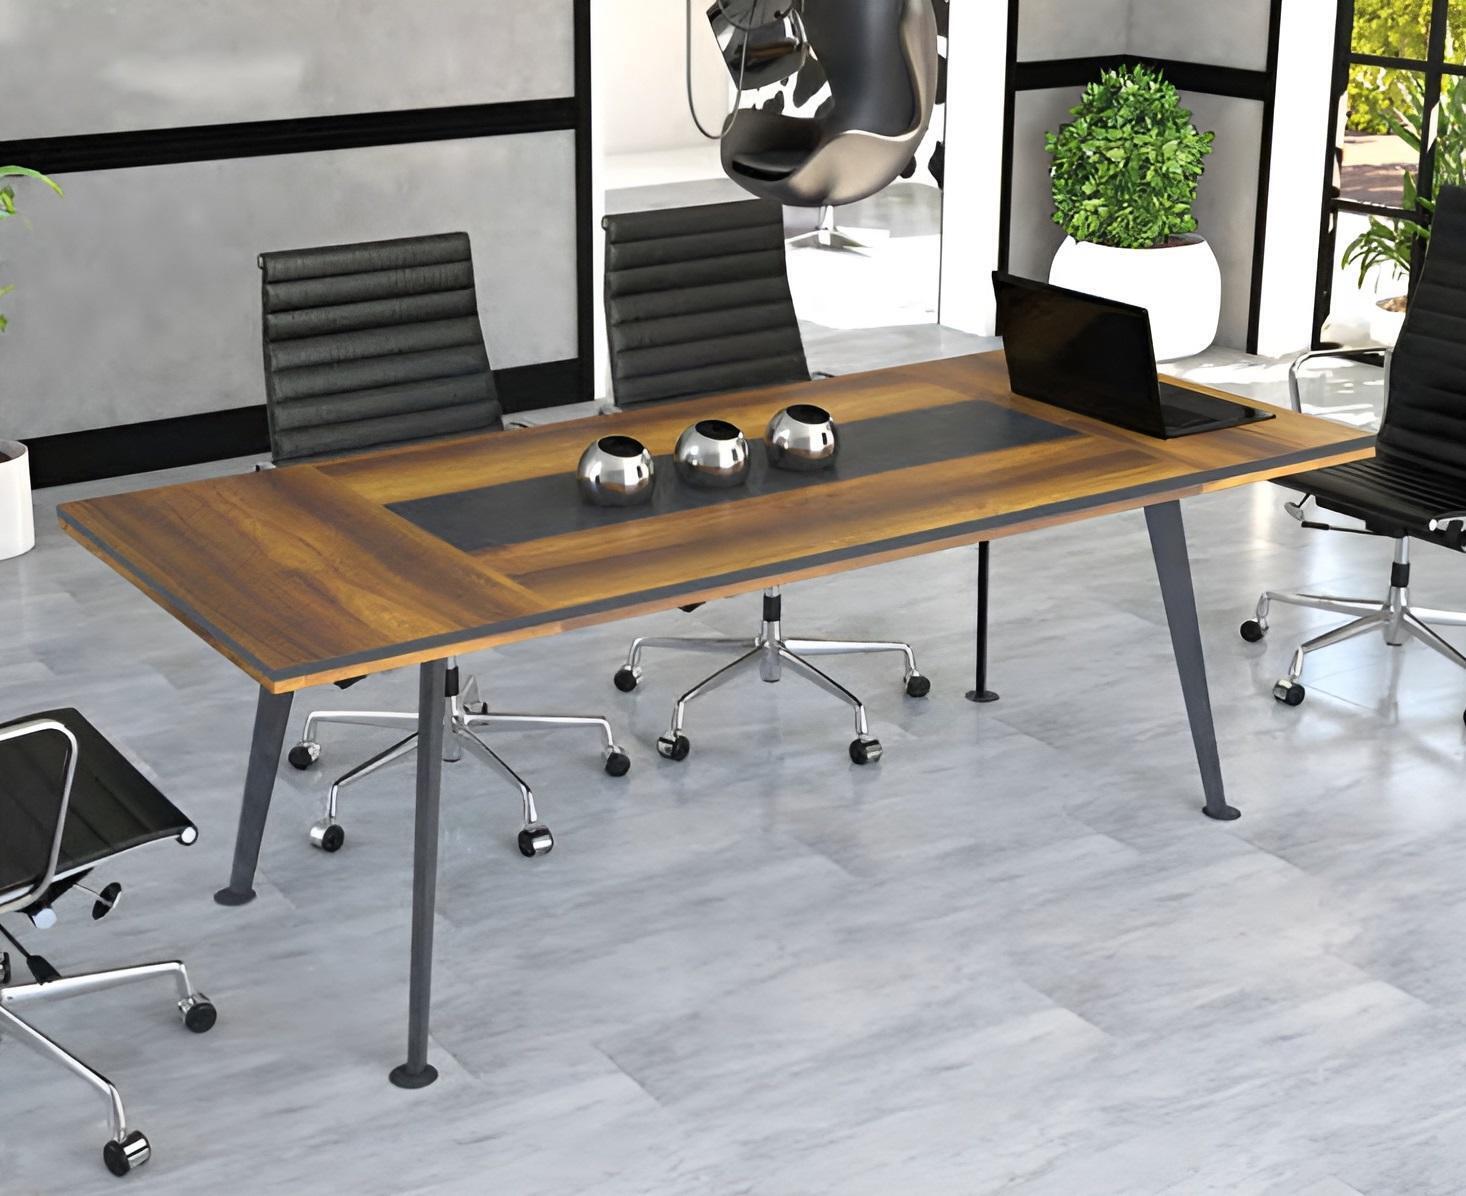 Konferenztisch Besprechungstische Konferenzmöbel Groß Tisch Braun Holz